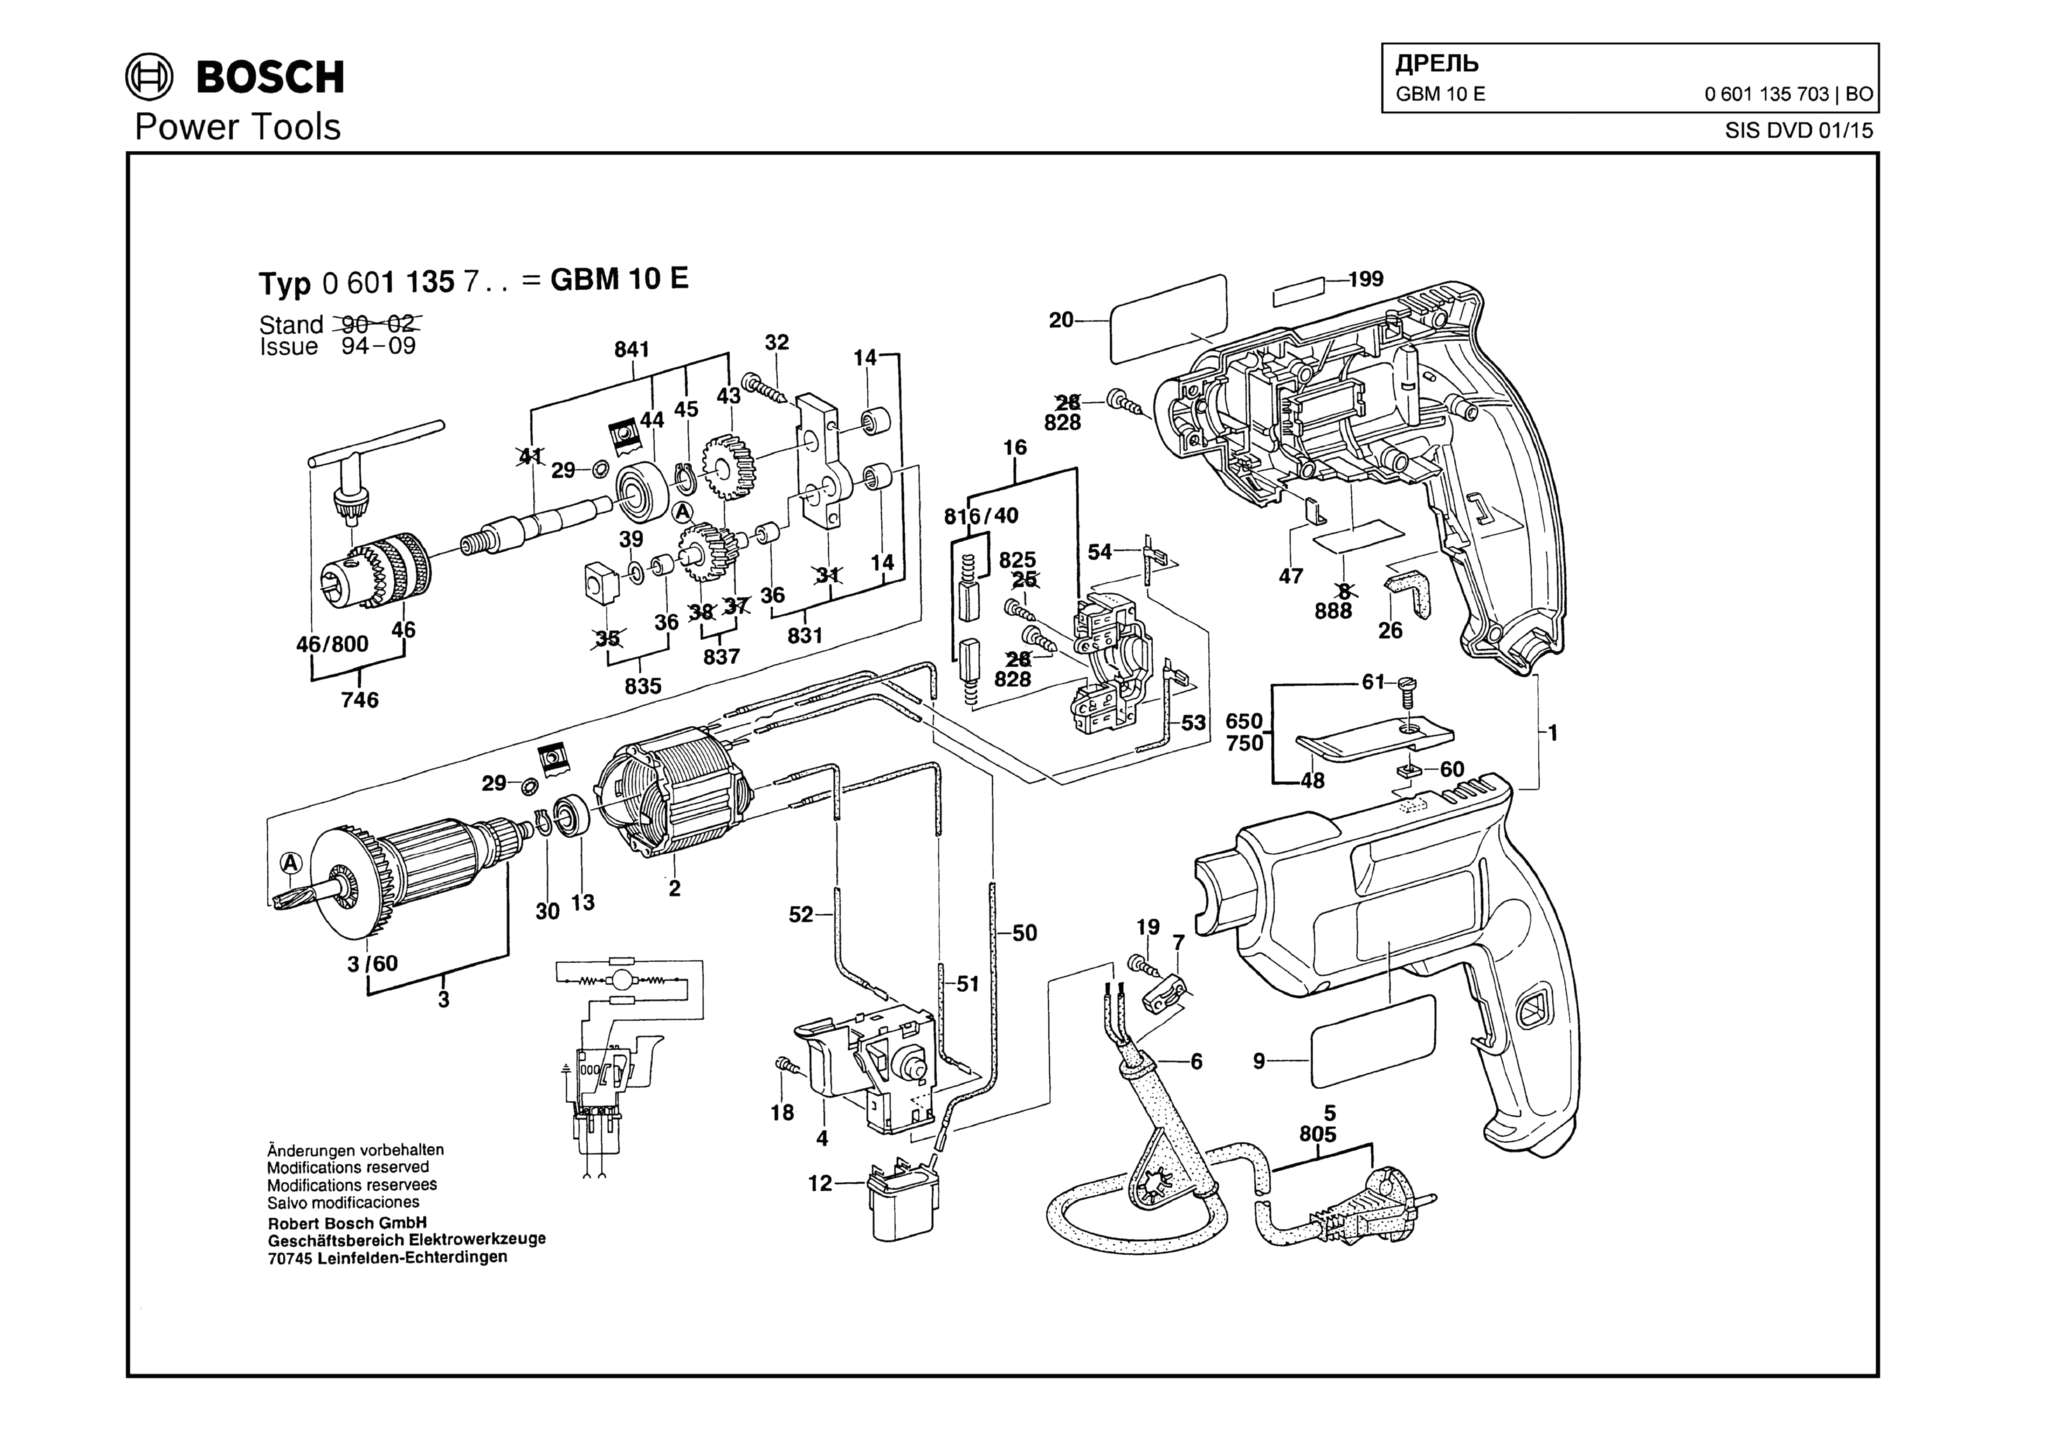 Запчасти, схема и деталировка Bosch GBM 10 E (ТИП 0601135703)